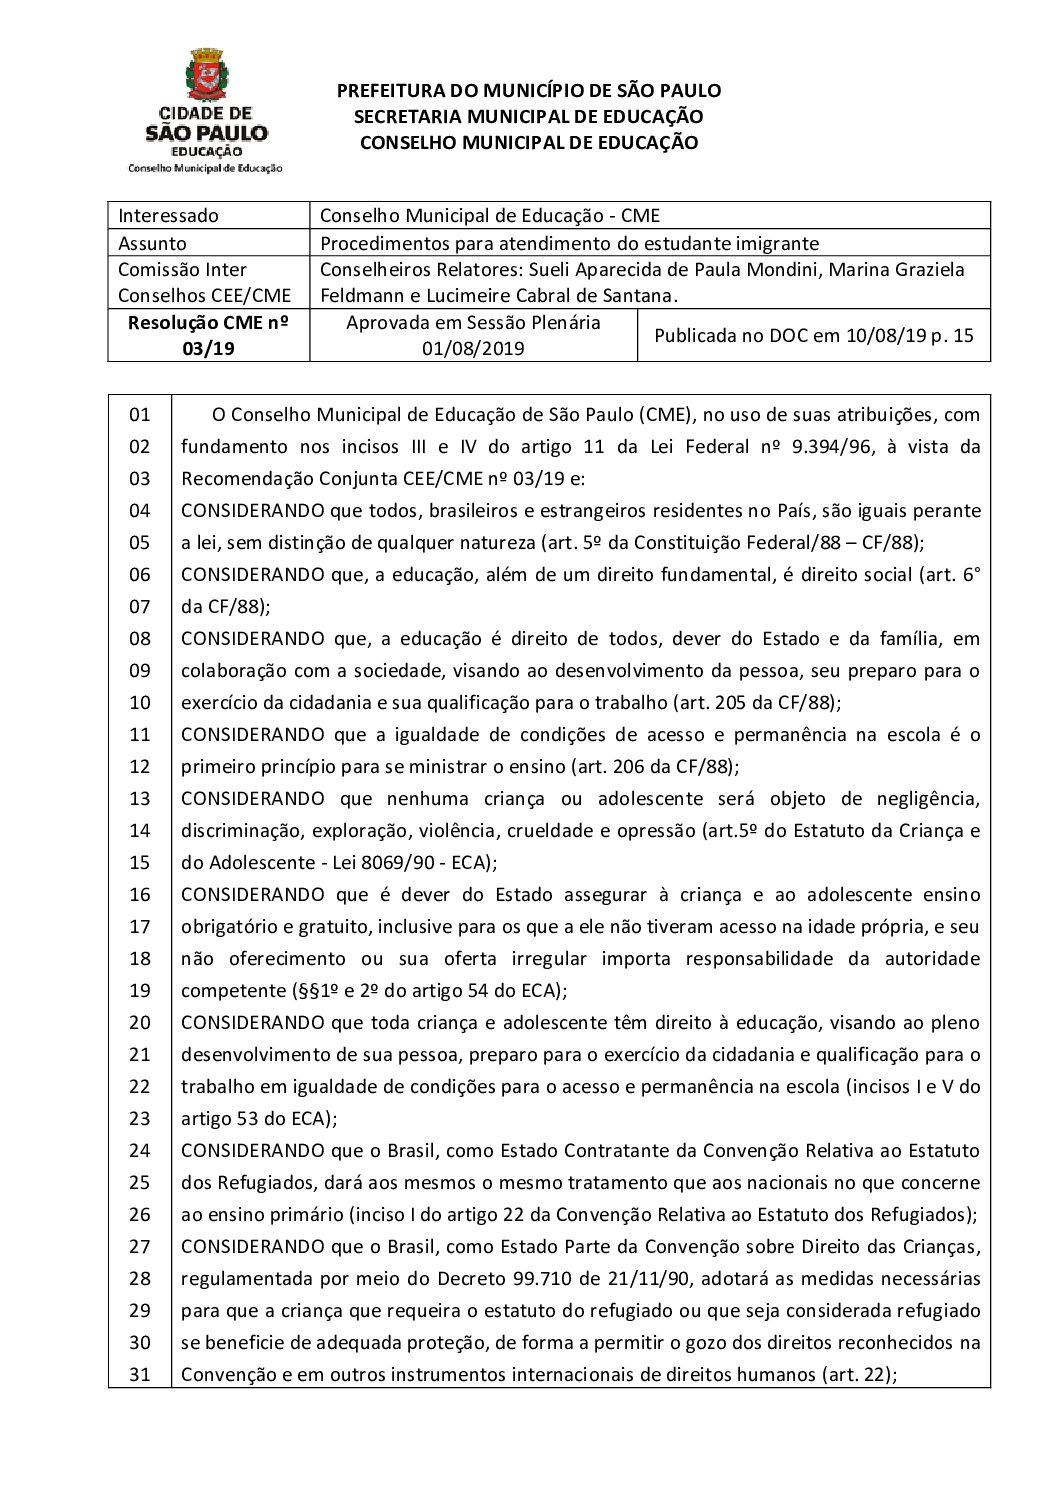 Resolução CME nº 03/2019 - Procedimentos para atendimento do estudante imigrante 